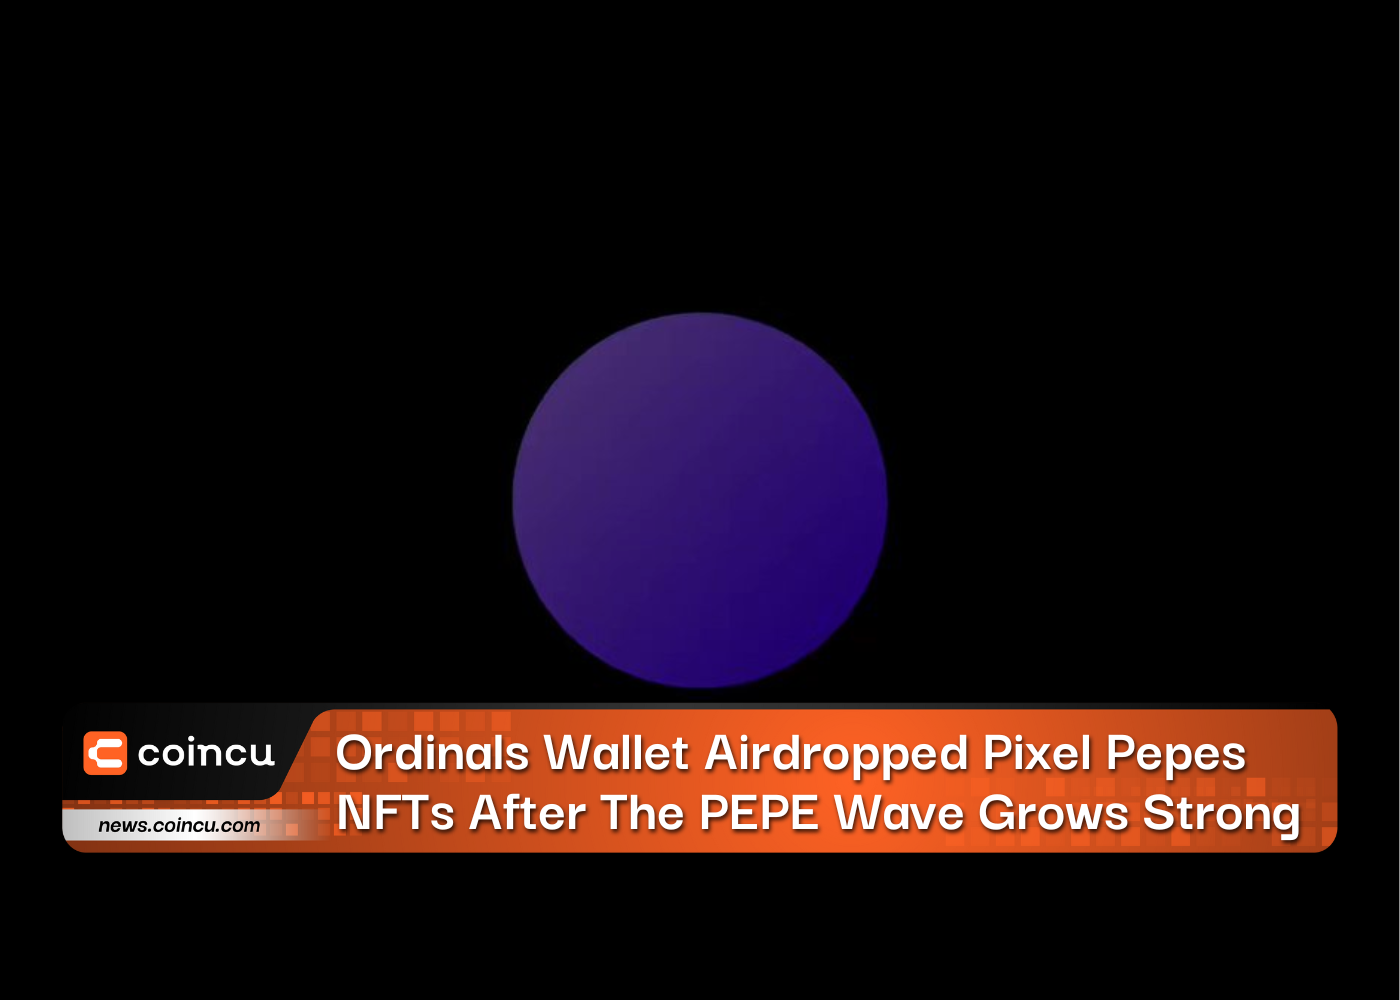 पीईपीई लहर मजबूत होने के बाद ऑर्डिनल्स वॉलेट ने पिक्सेल पेप्स एनएफटी को एयरड्रॉप किया